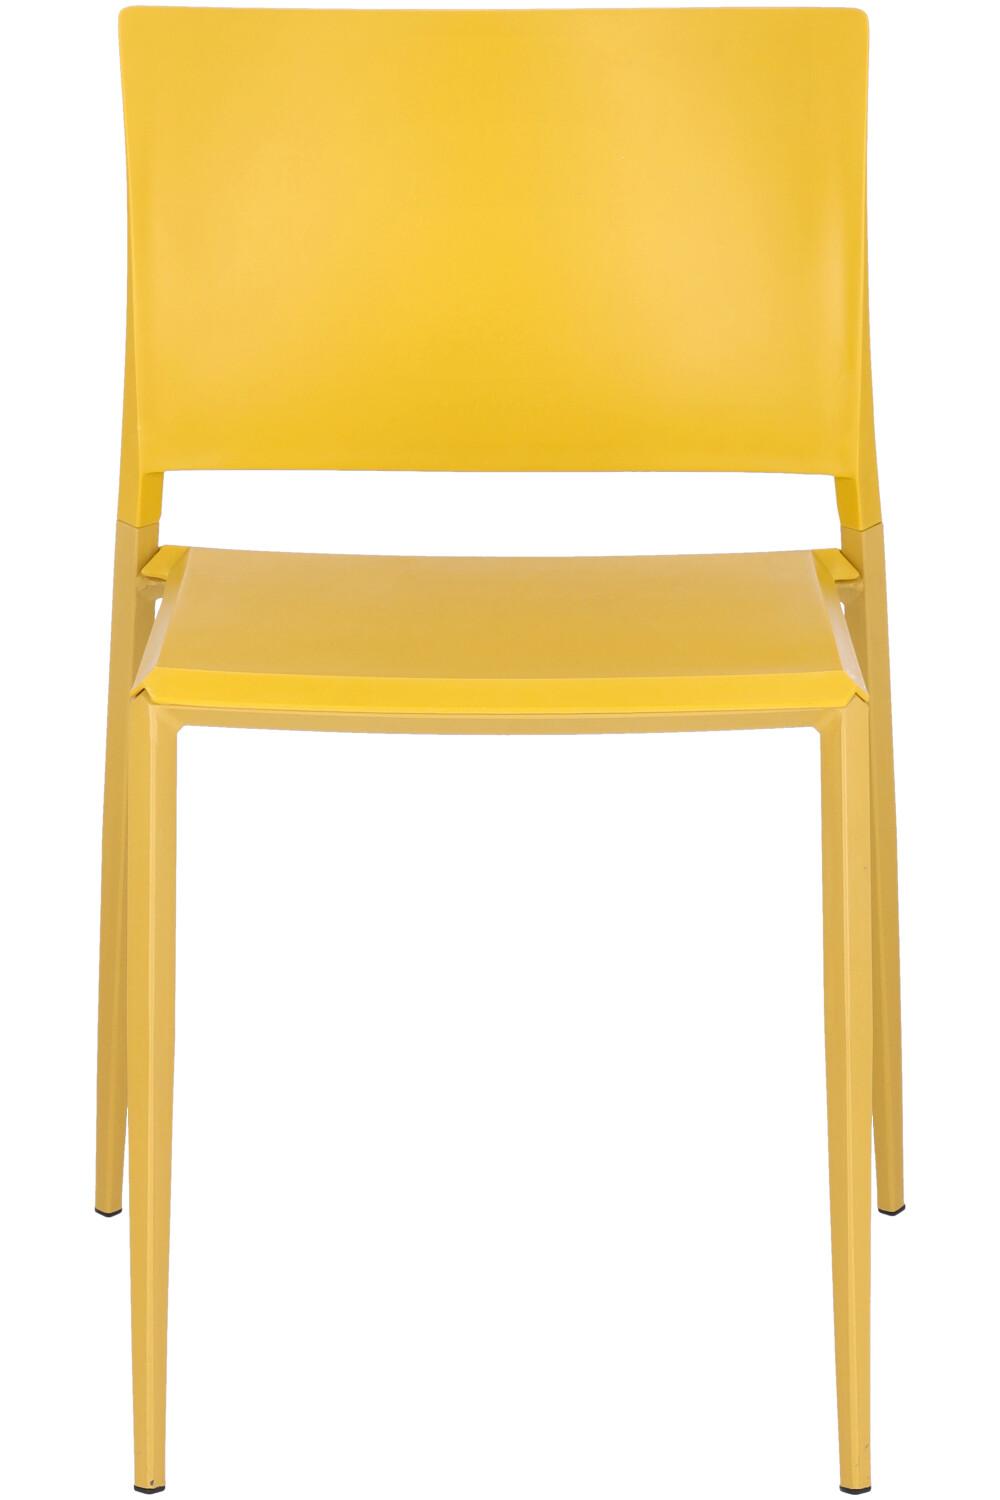 Abbildung chair Barlin Vorderansicht